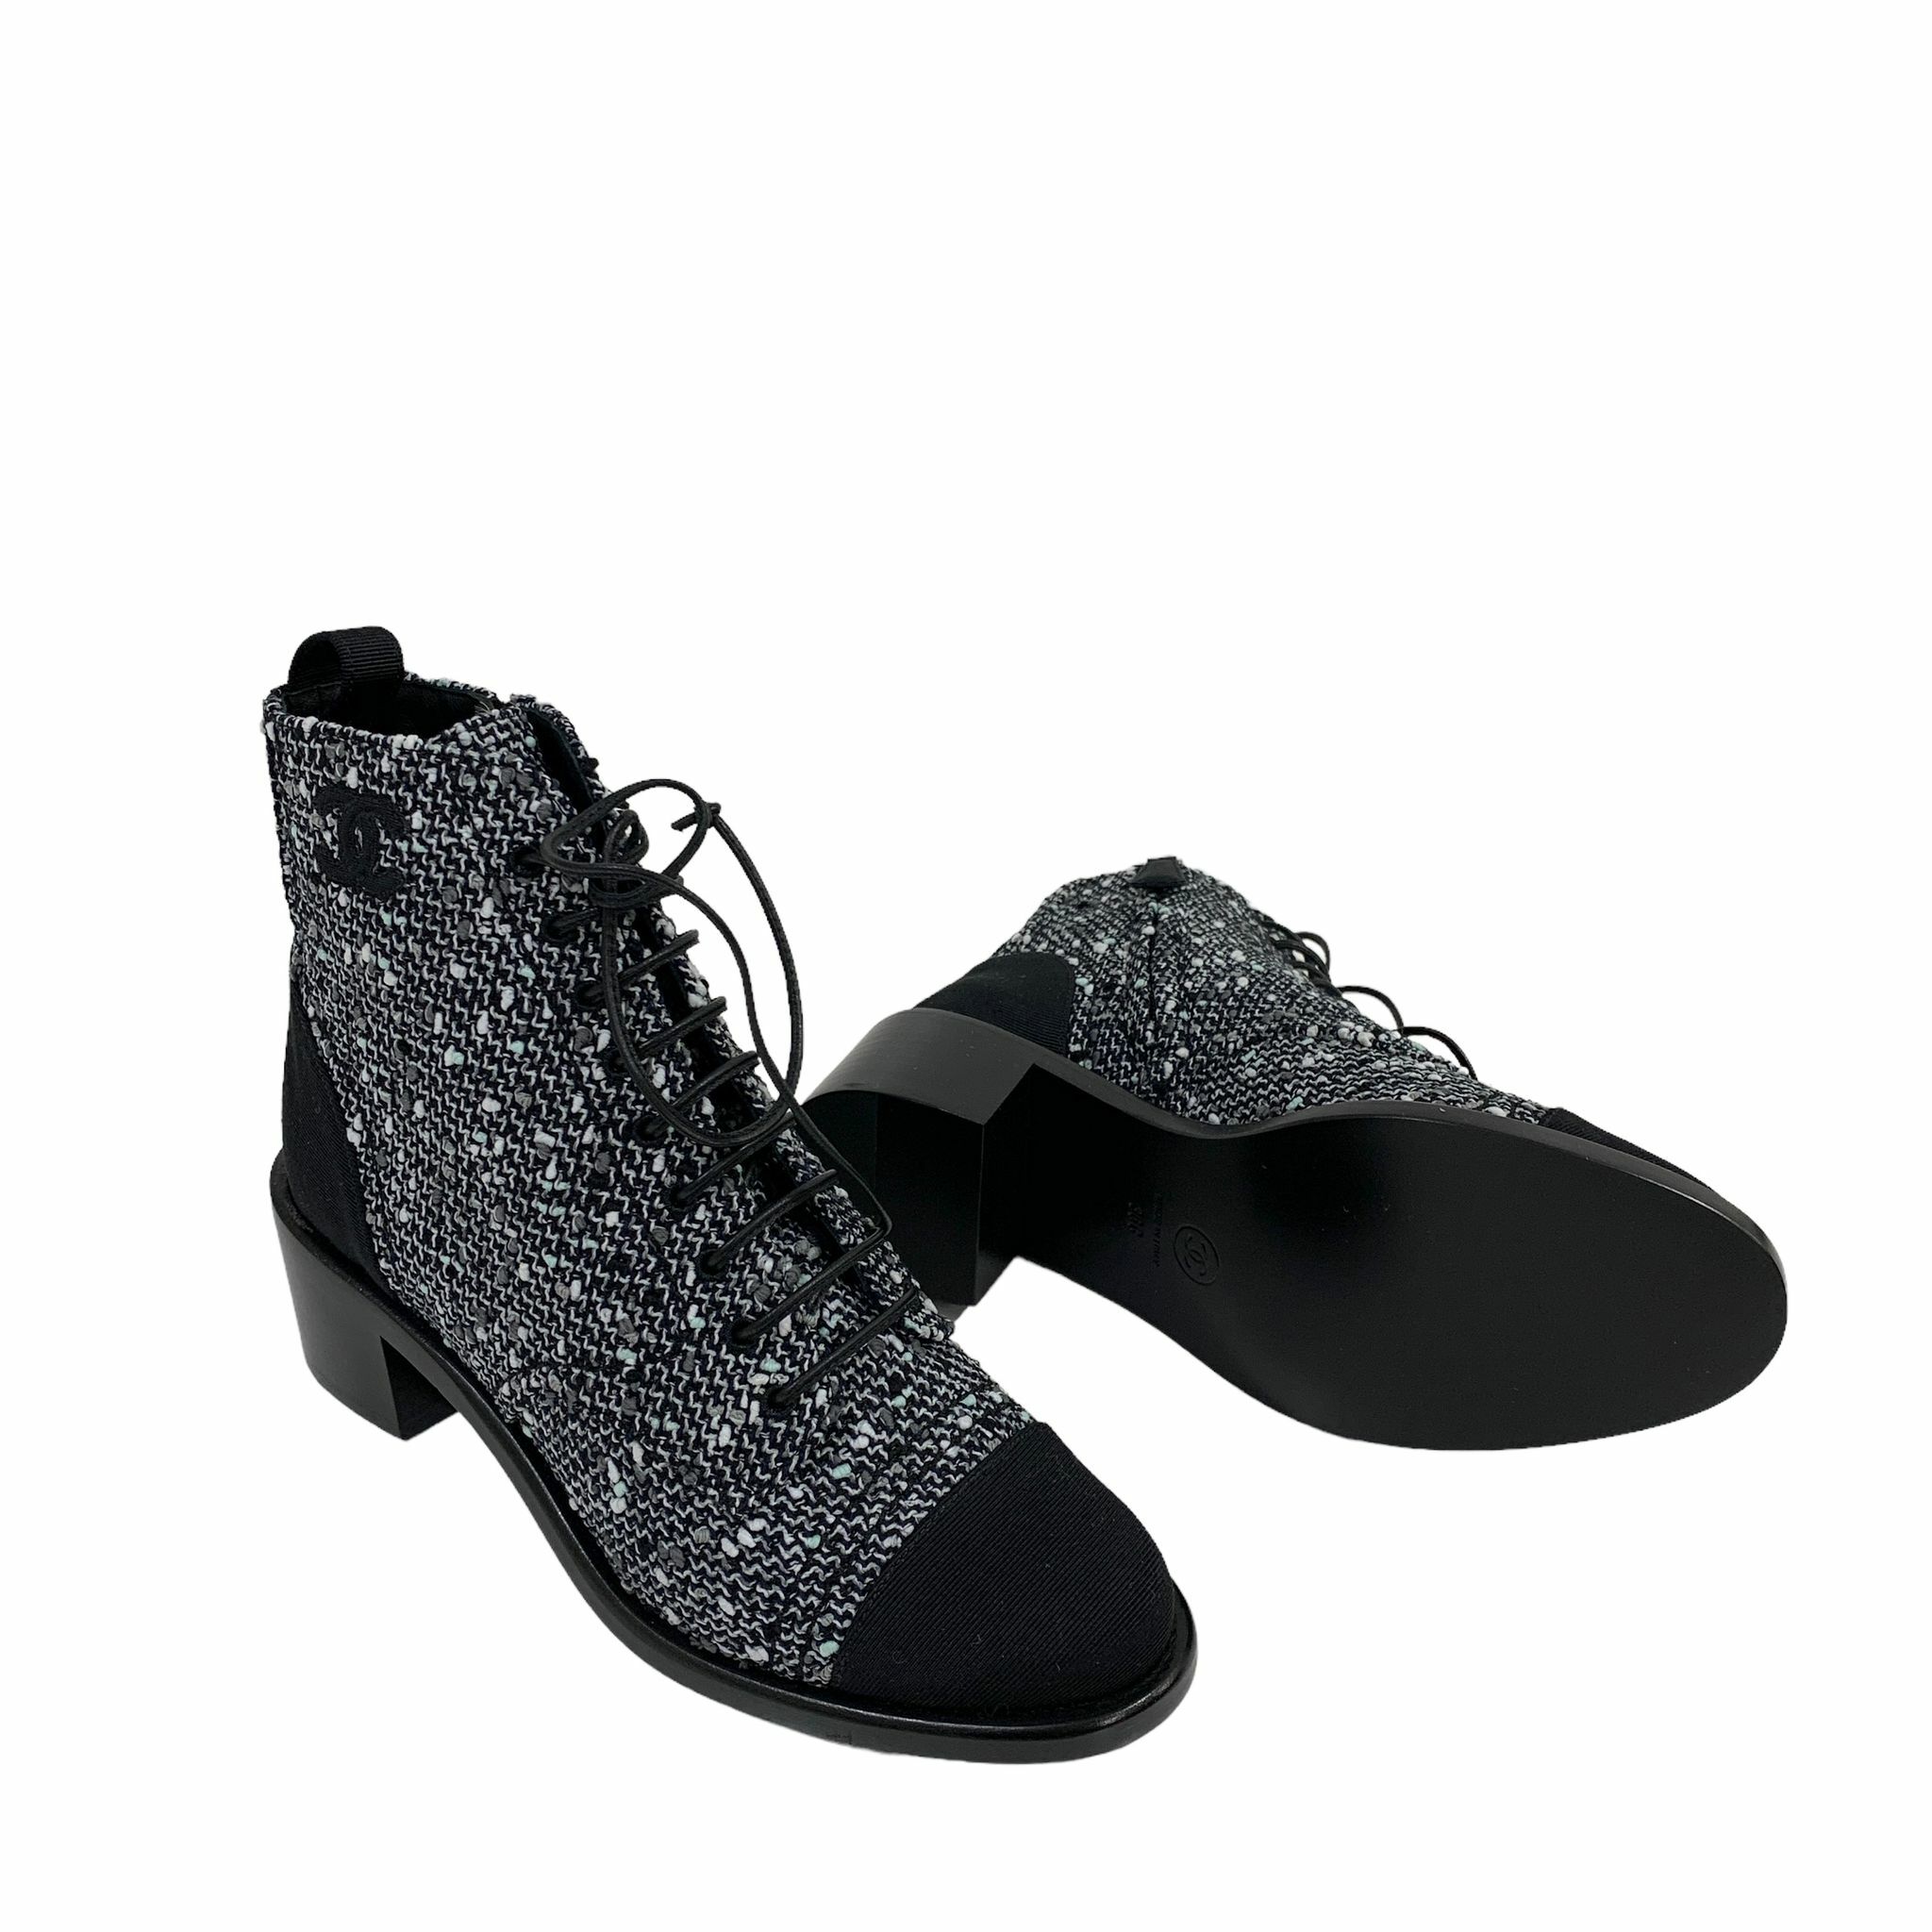 全新CHANEL短靴/BOOTS 36碼G34643 黑白色TWEED綁帶靴子#BRAND NEW